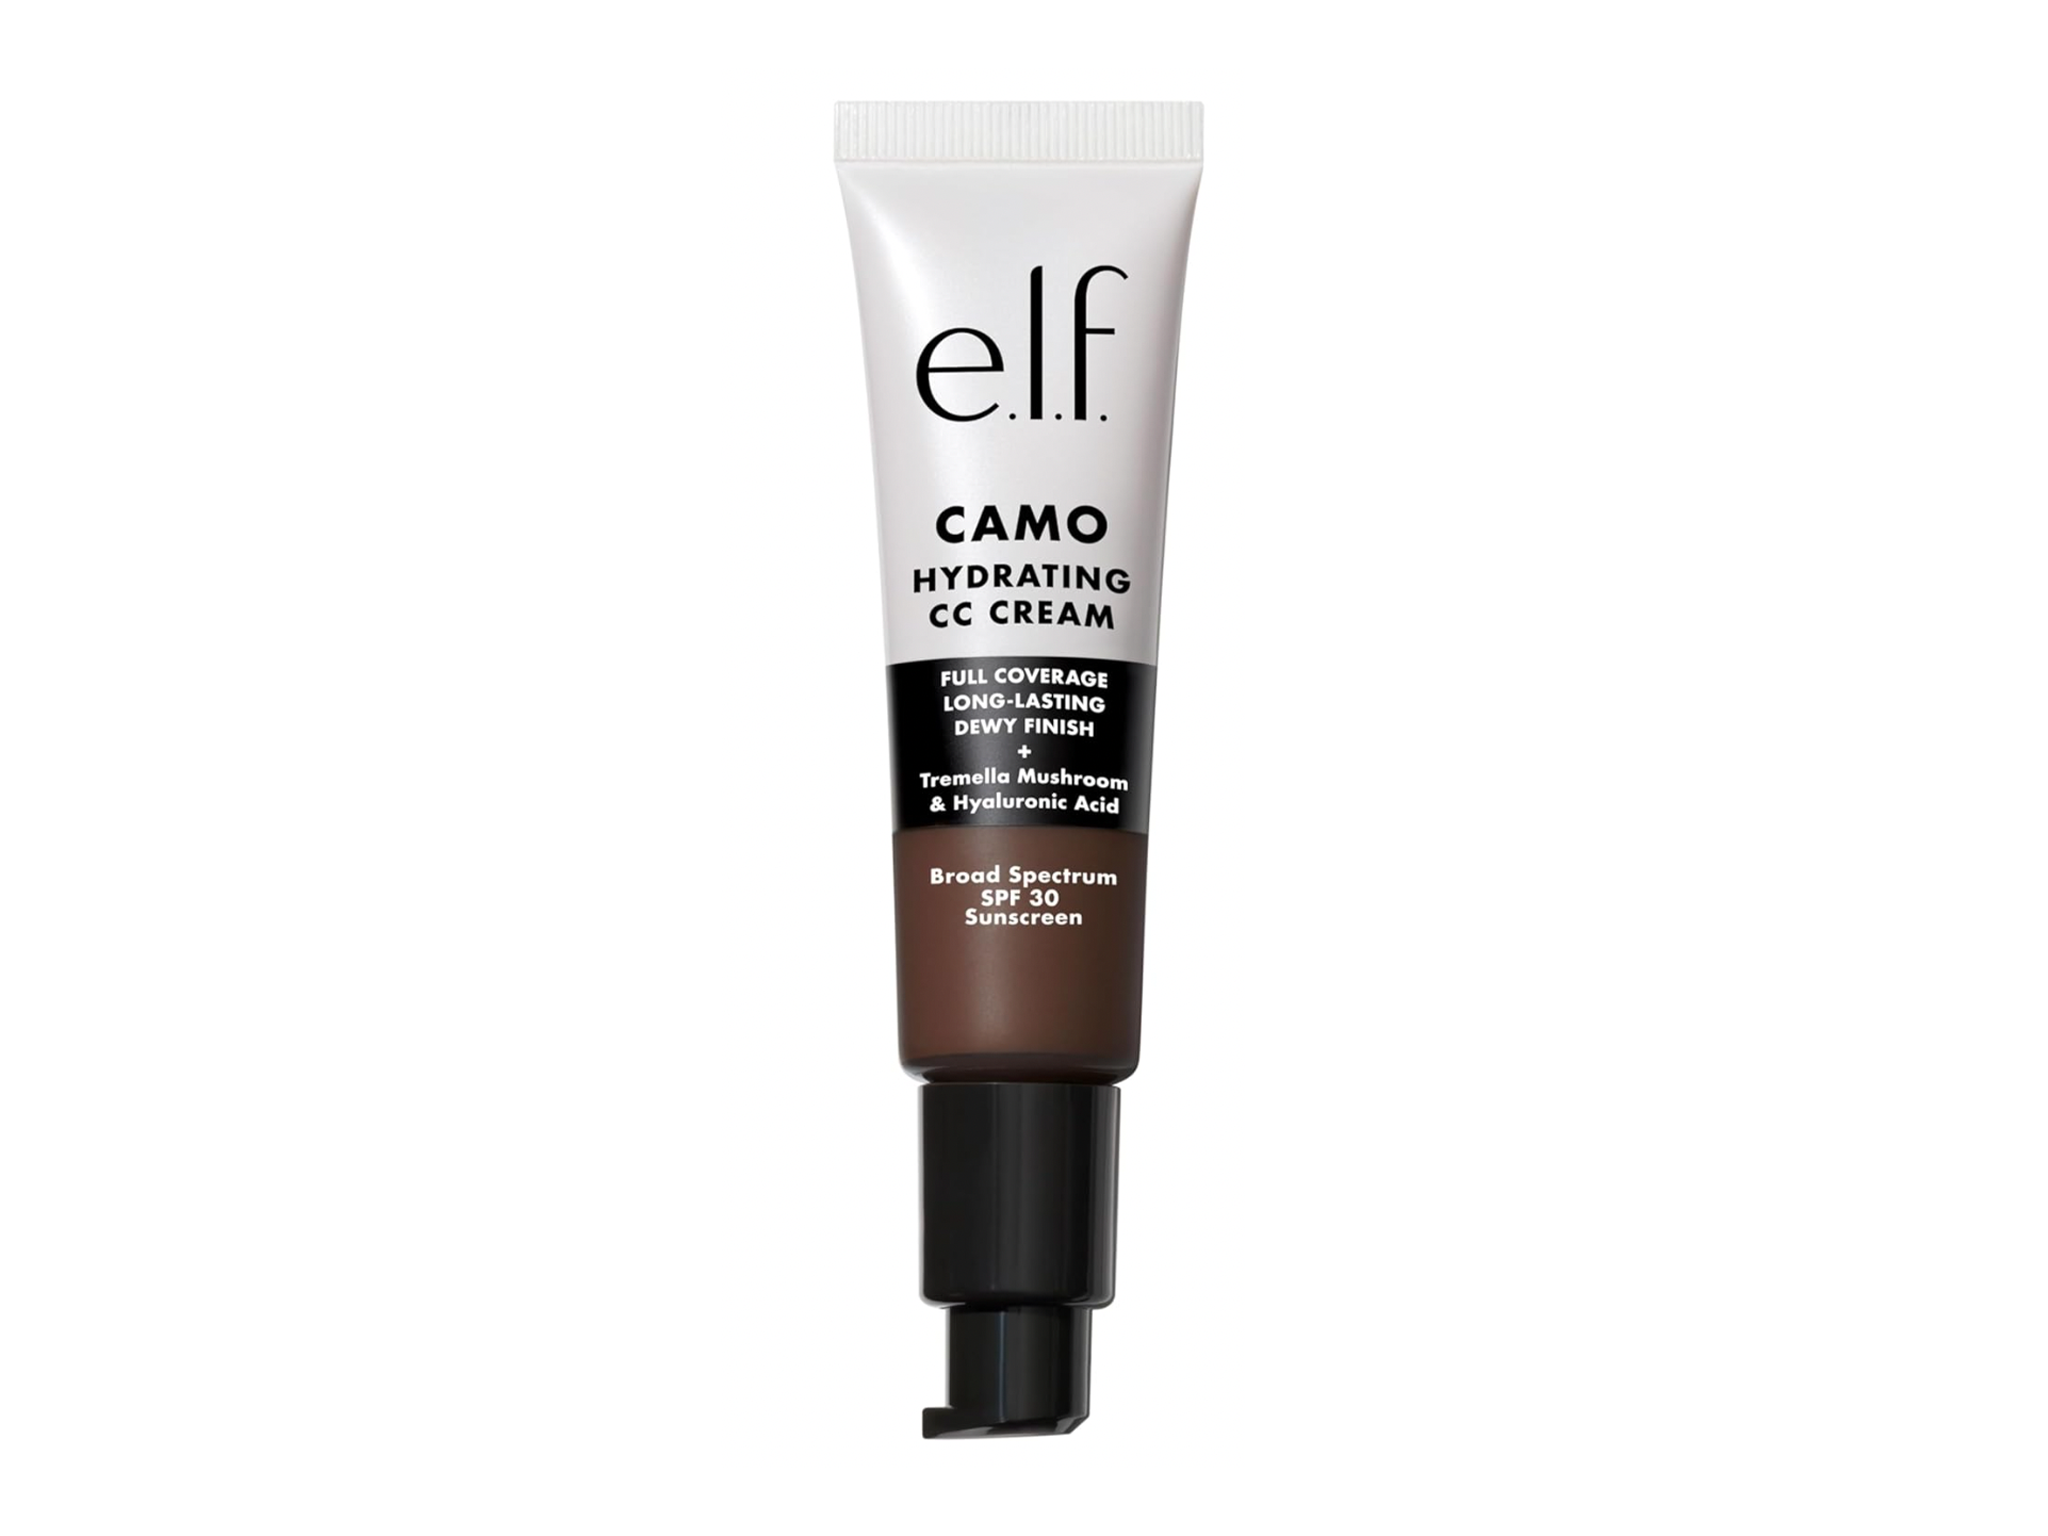  E.l.f. hydrating camo CC cream